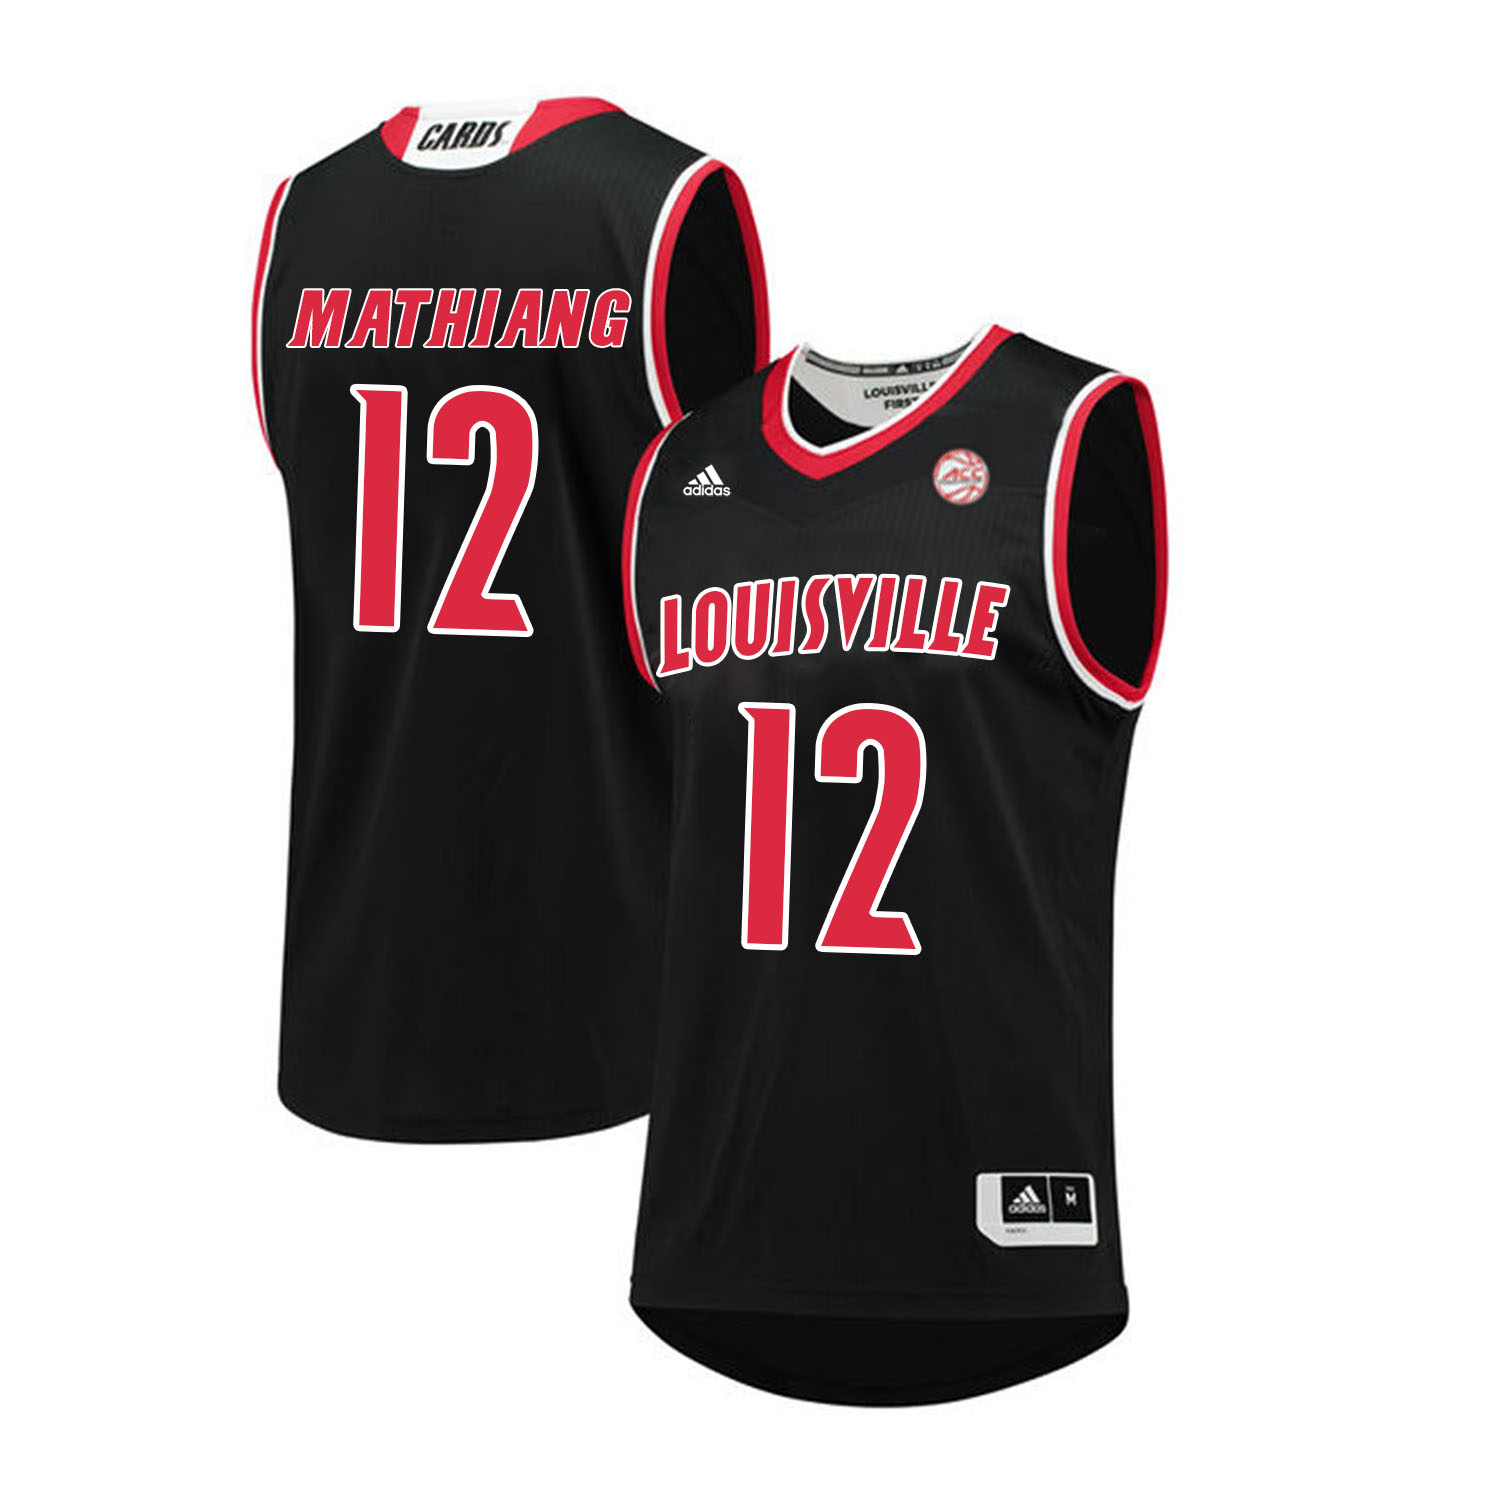 Louisville Cardinals 12 Mangok Mathiang Black College Basketball Jersey